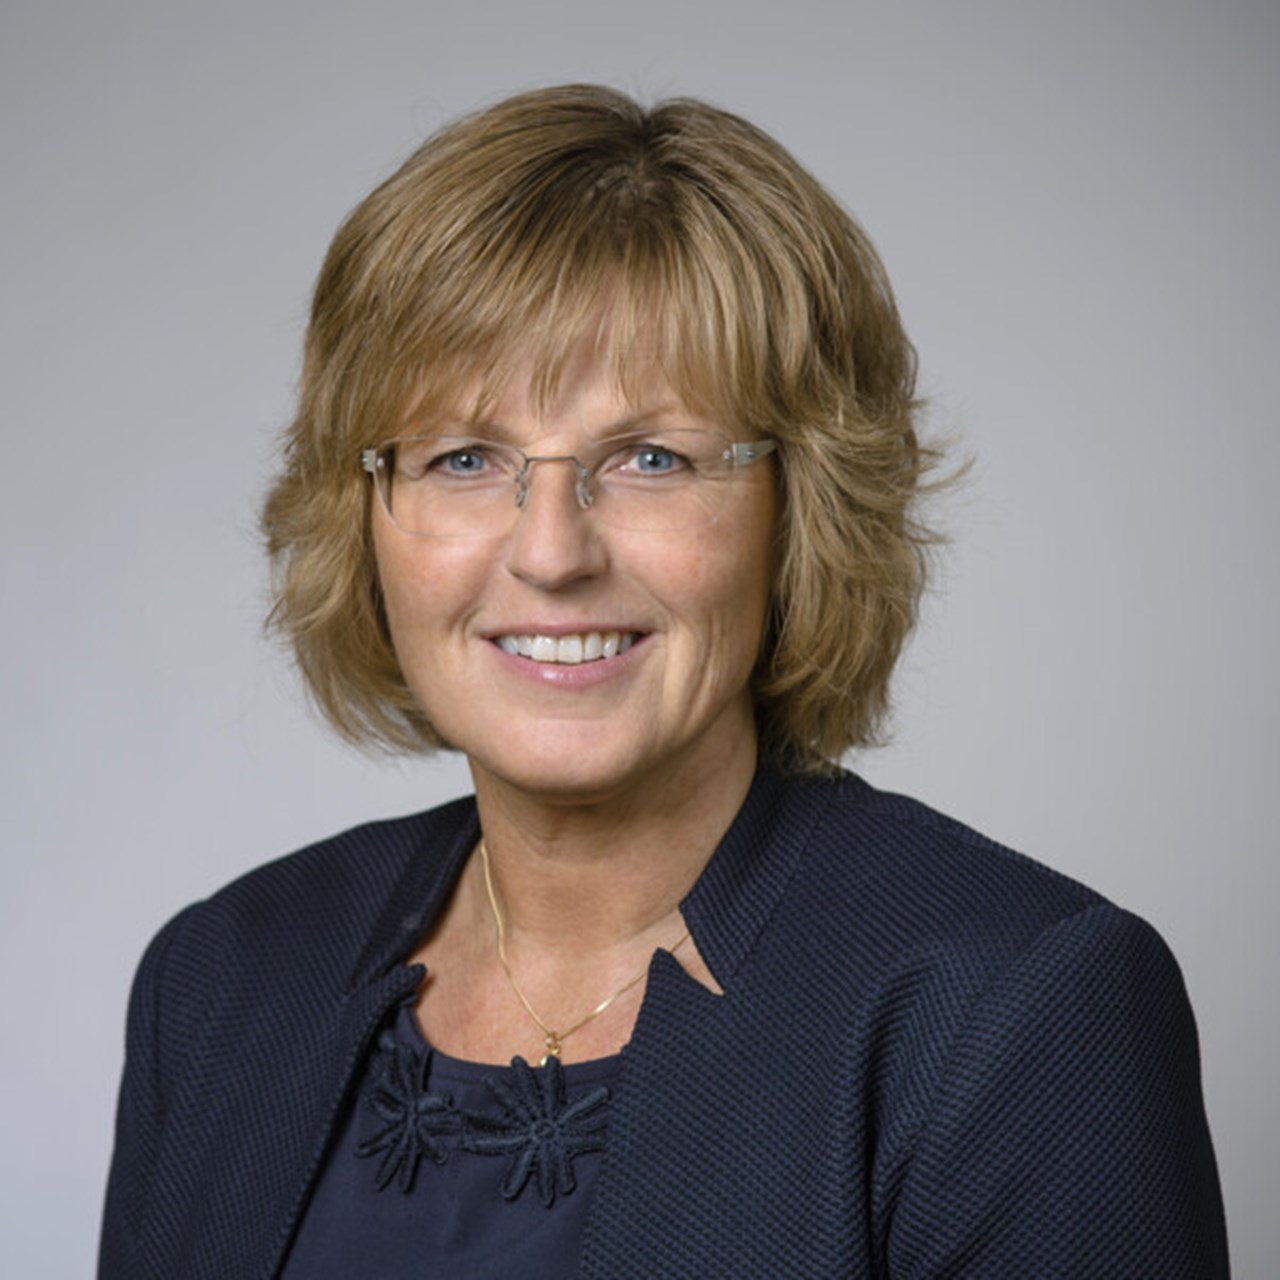 Porträtt på Ruth Mannelqvist, professor vid Juridiska institutionen, Umeå universitet.